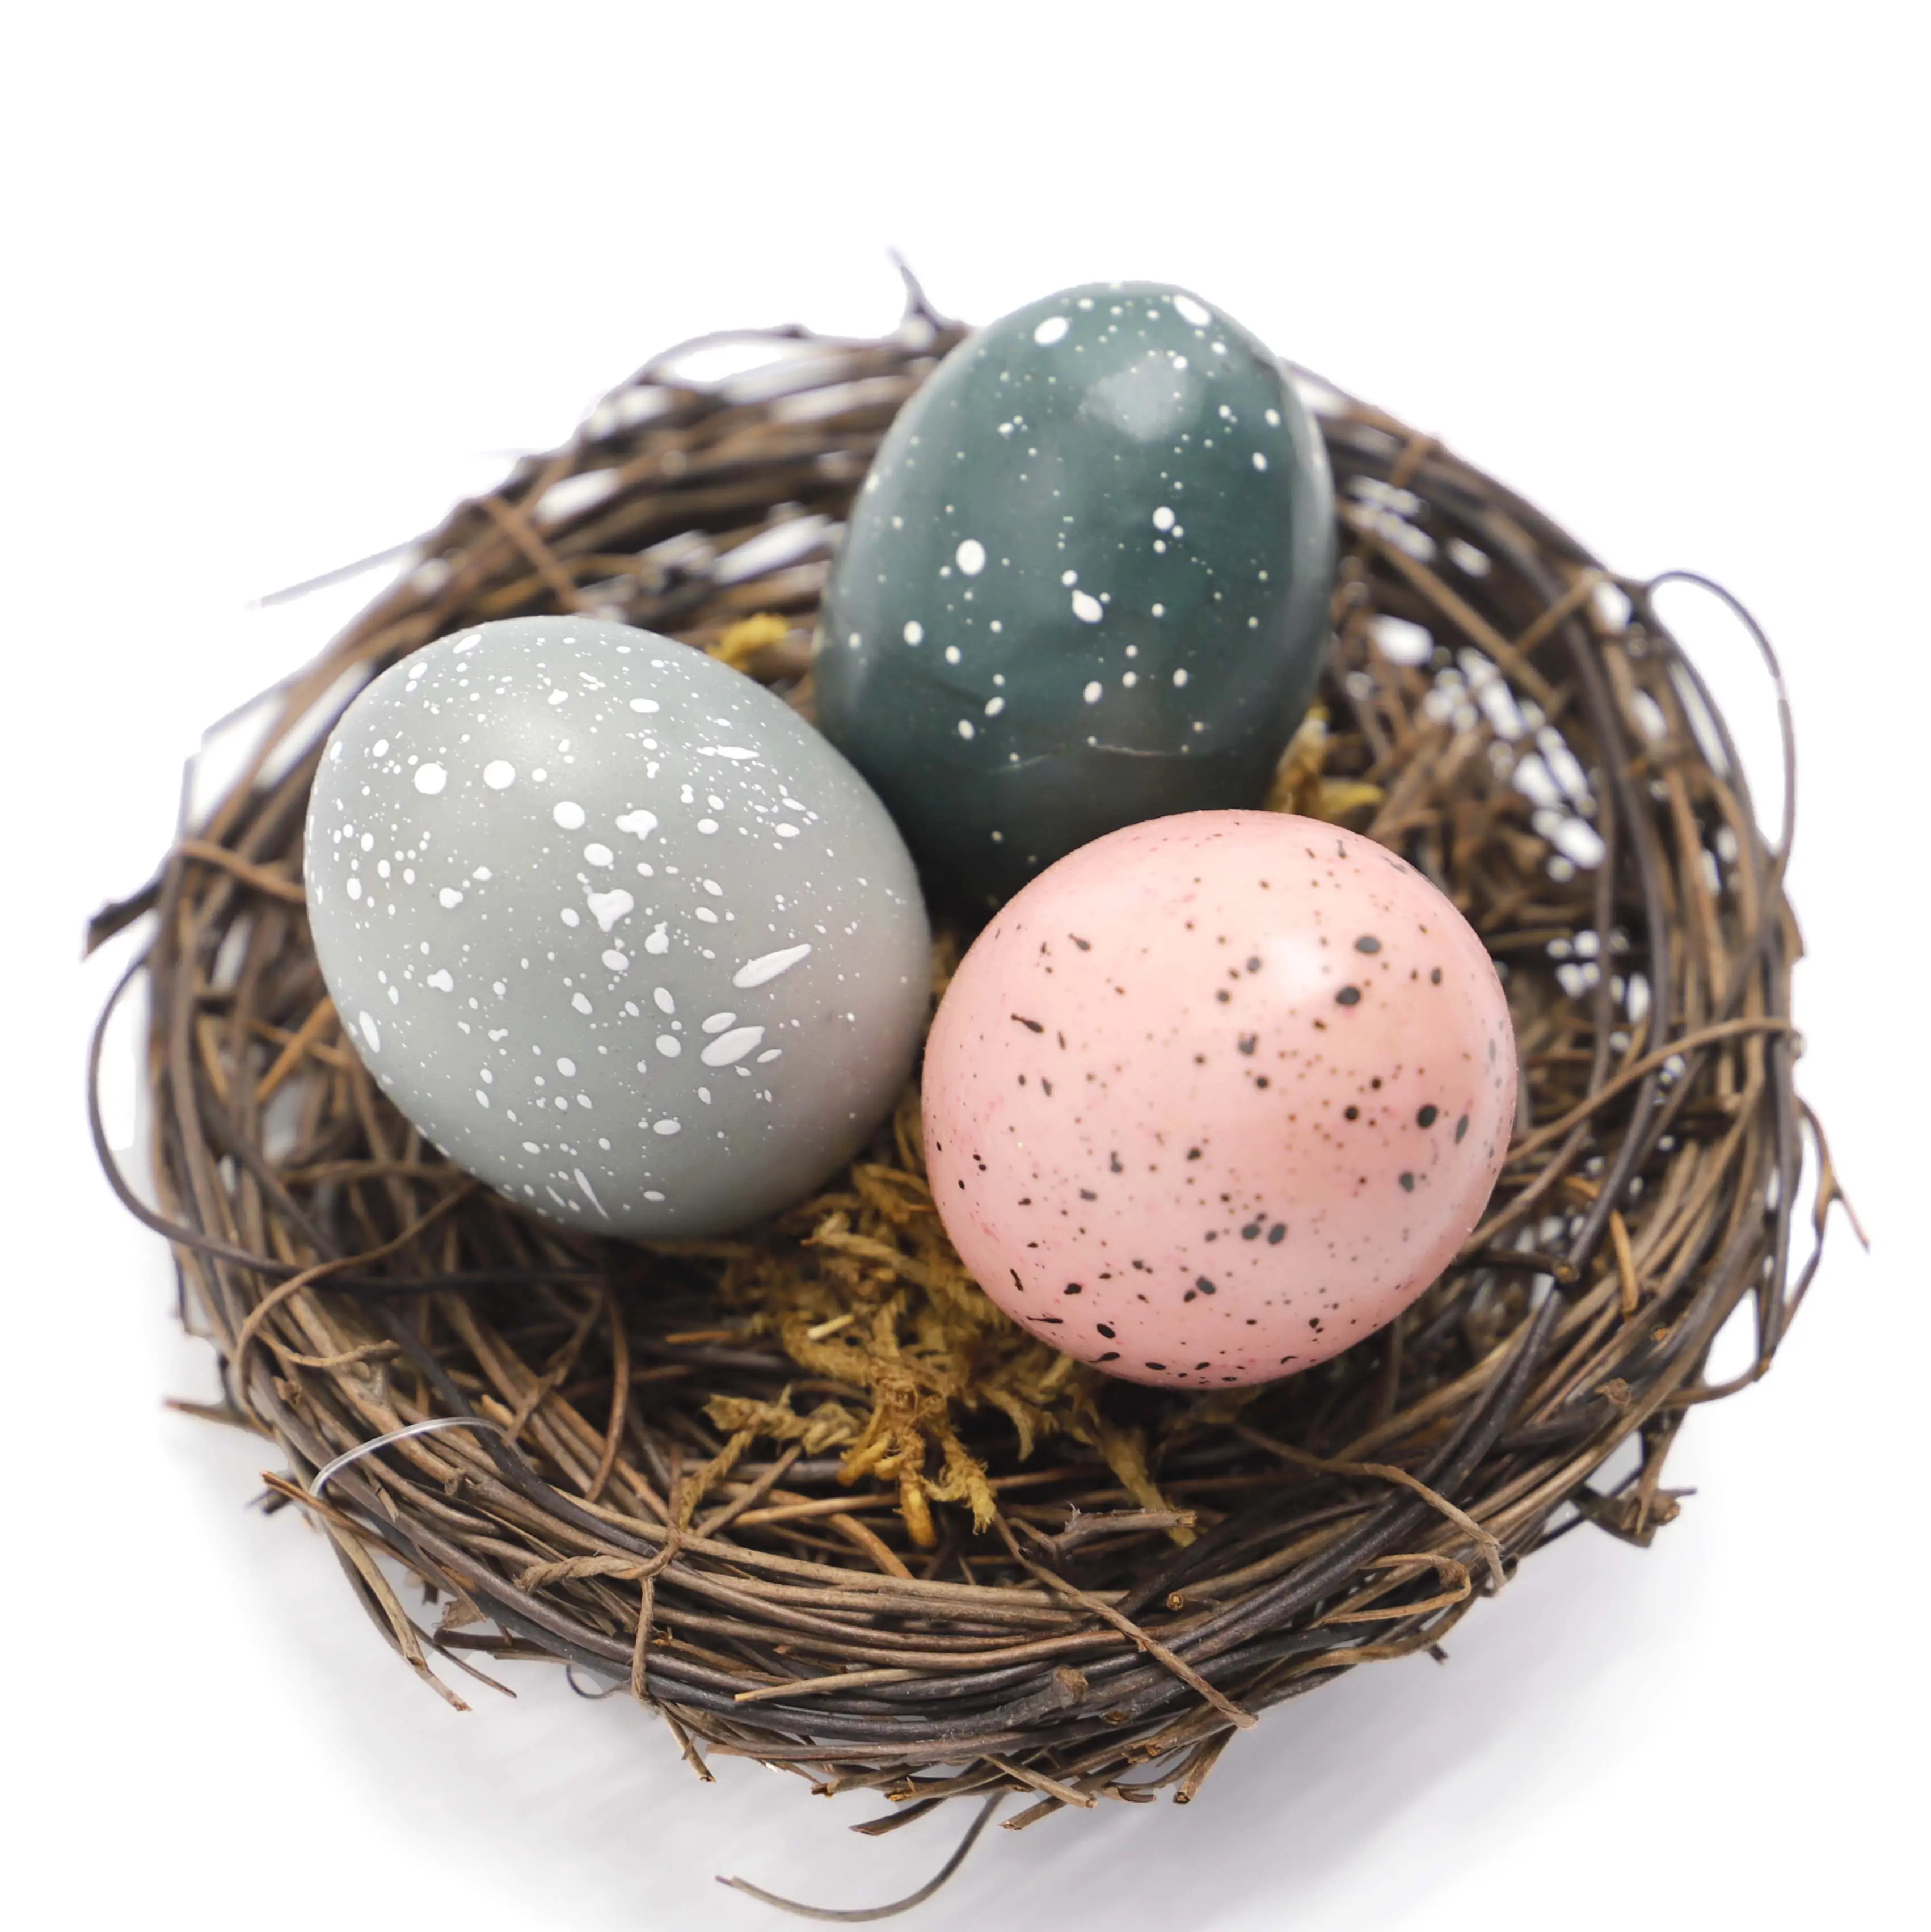 Sarang Burung Buatan Tangan, Sarang Burung Buatan Tangan dengan Telur untuk Anak-anak Dekorasi Paskah Taman Halaman Rumah Pesta Dekorasi Telur Paskah